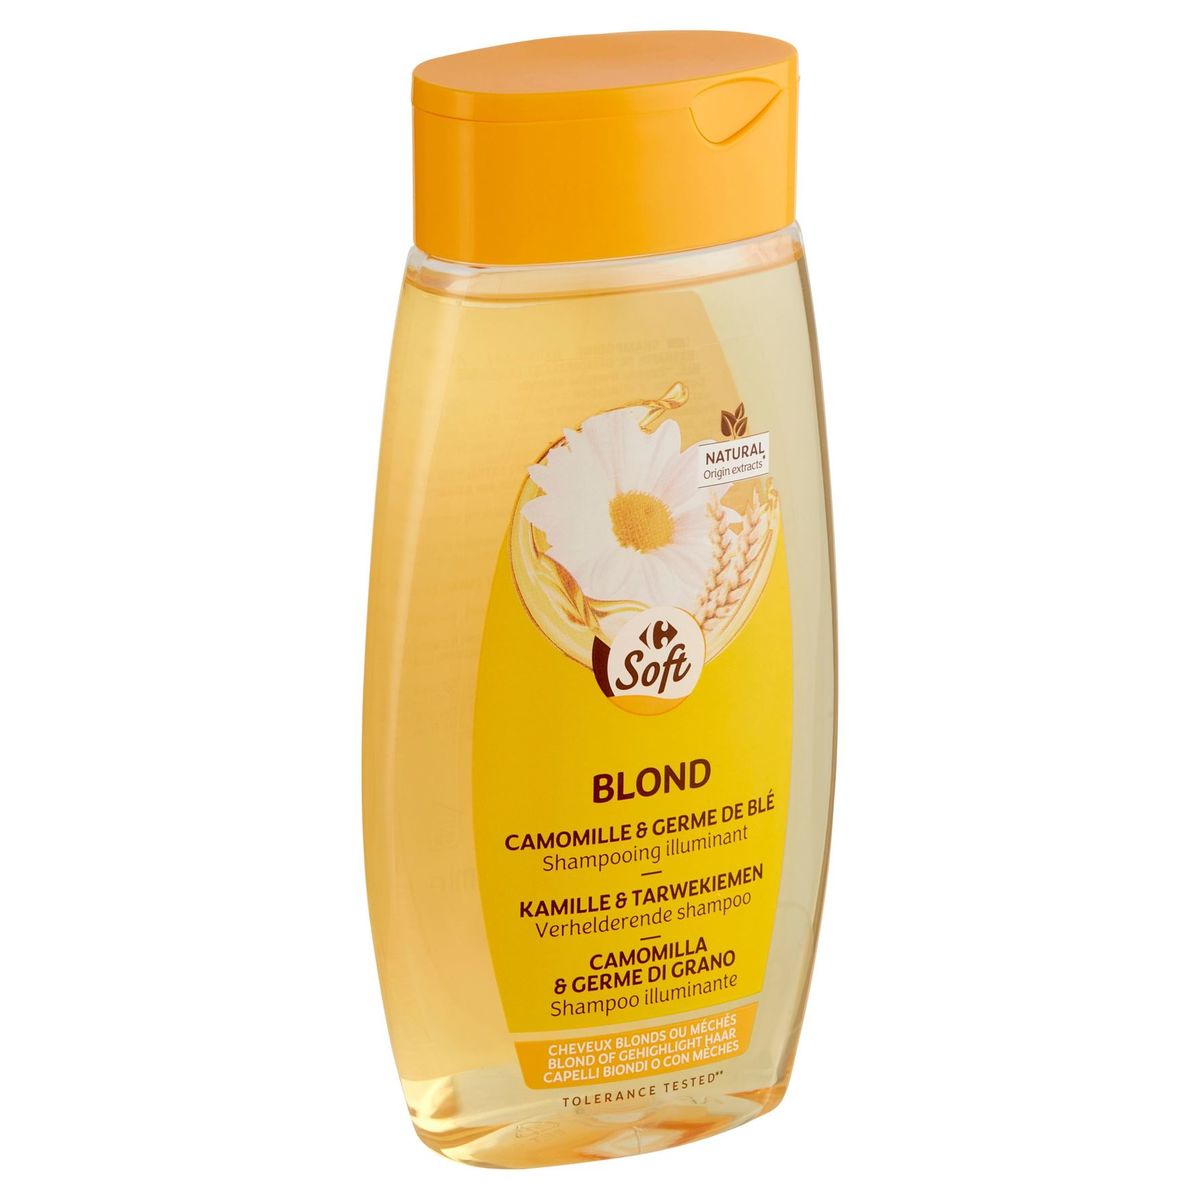 Carrefour Soft Blond Kamille & Tarwekiemen Verhelderende Shampoo 250ml